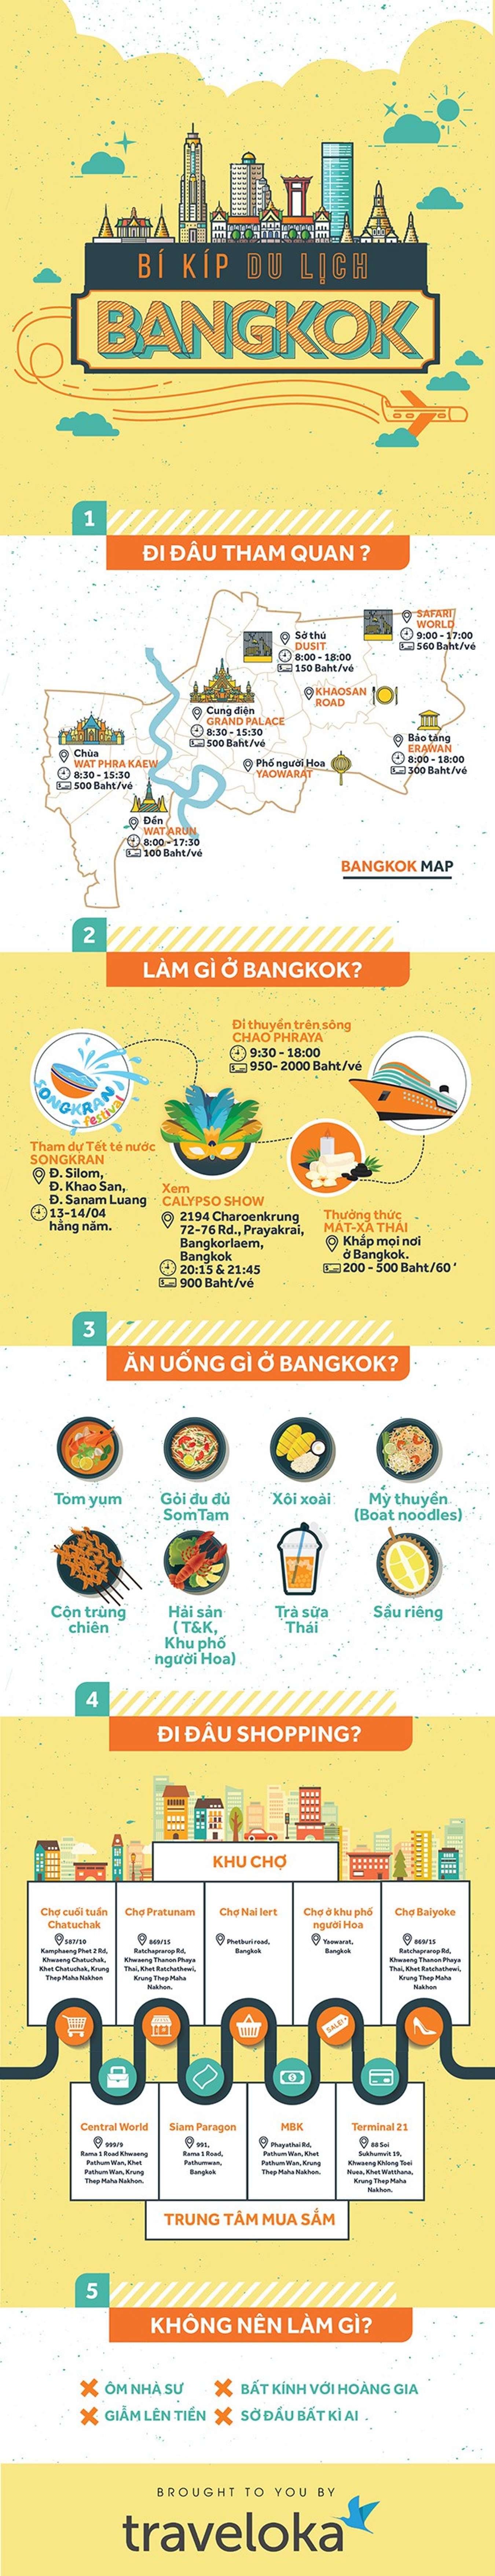 [Infographic] Bí Kíp Du Lịch Bangkok 2017